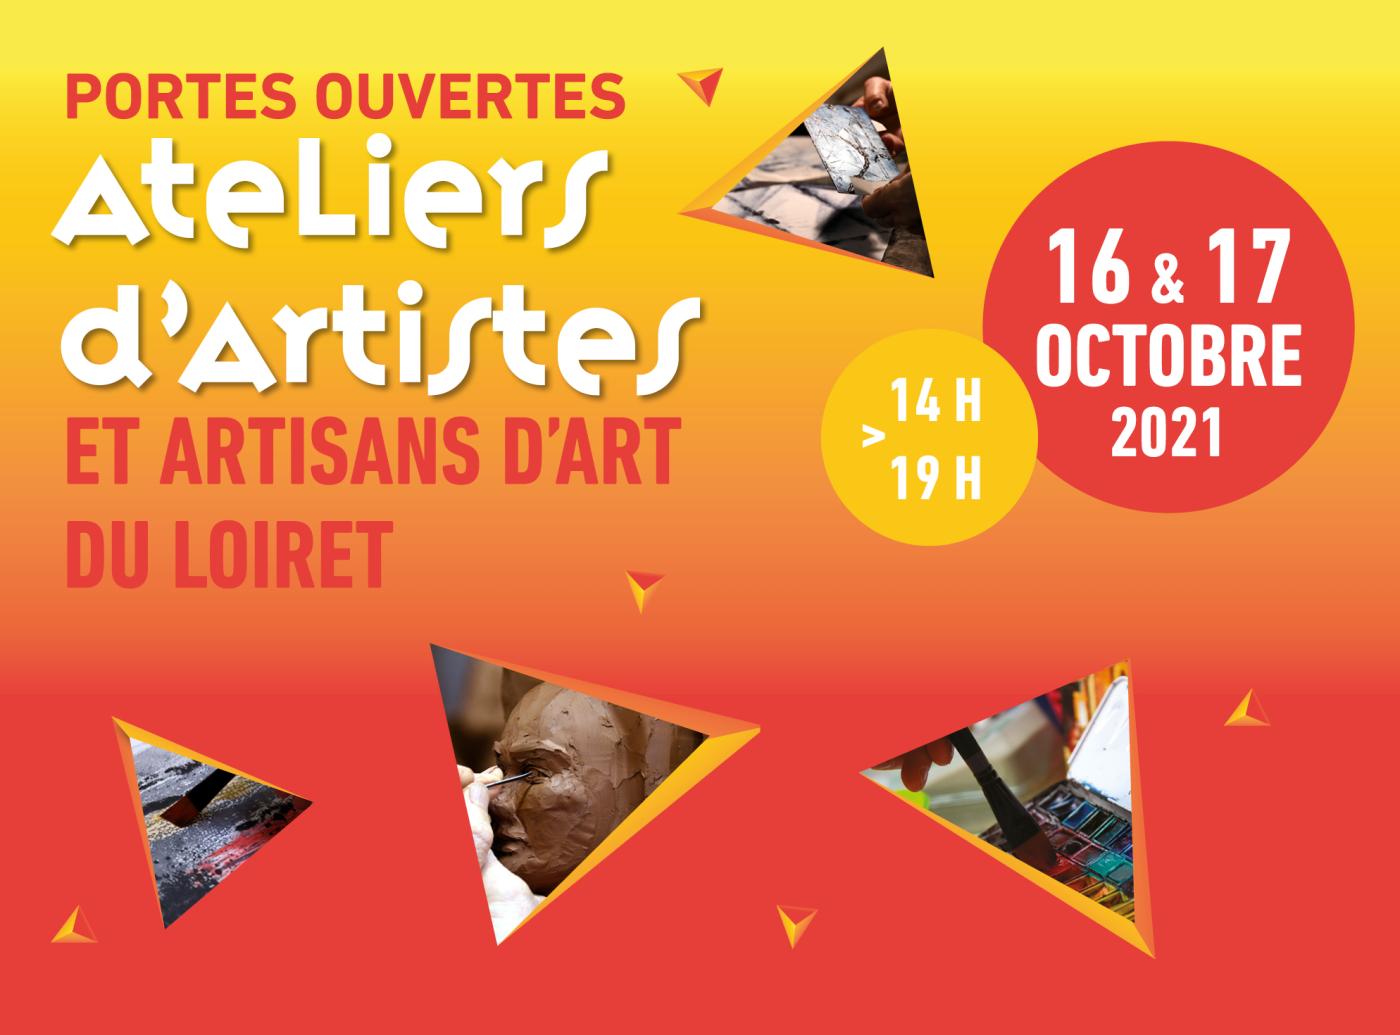 Portes ouvertes des ateliers d’artistes et artisans d’art du Loiret : 16e édition - visuel